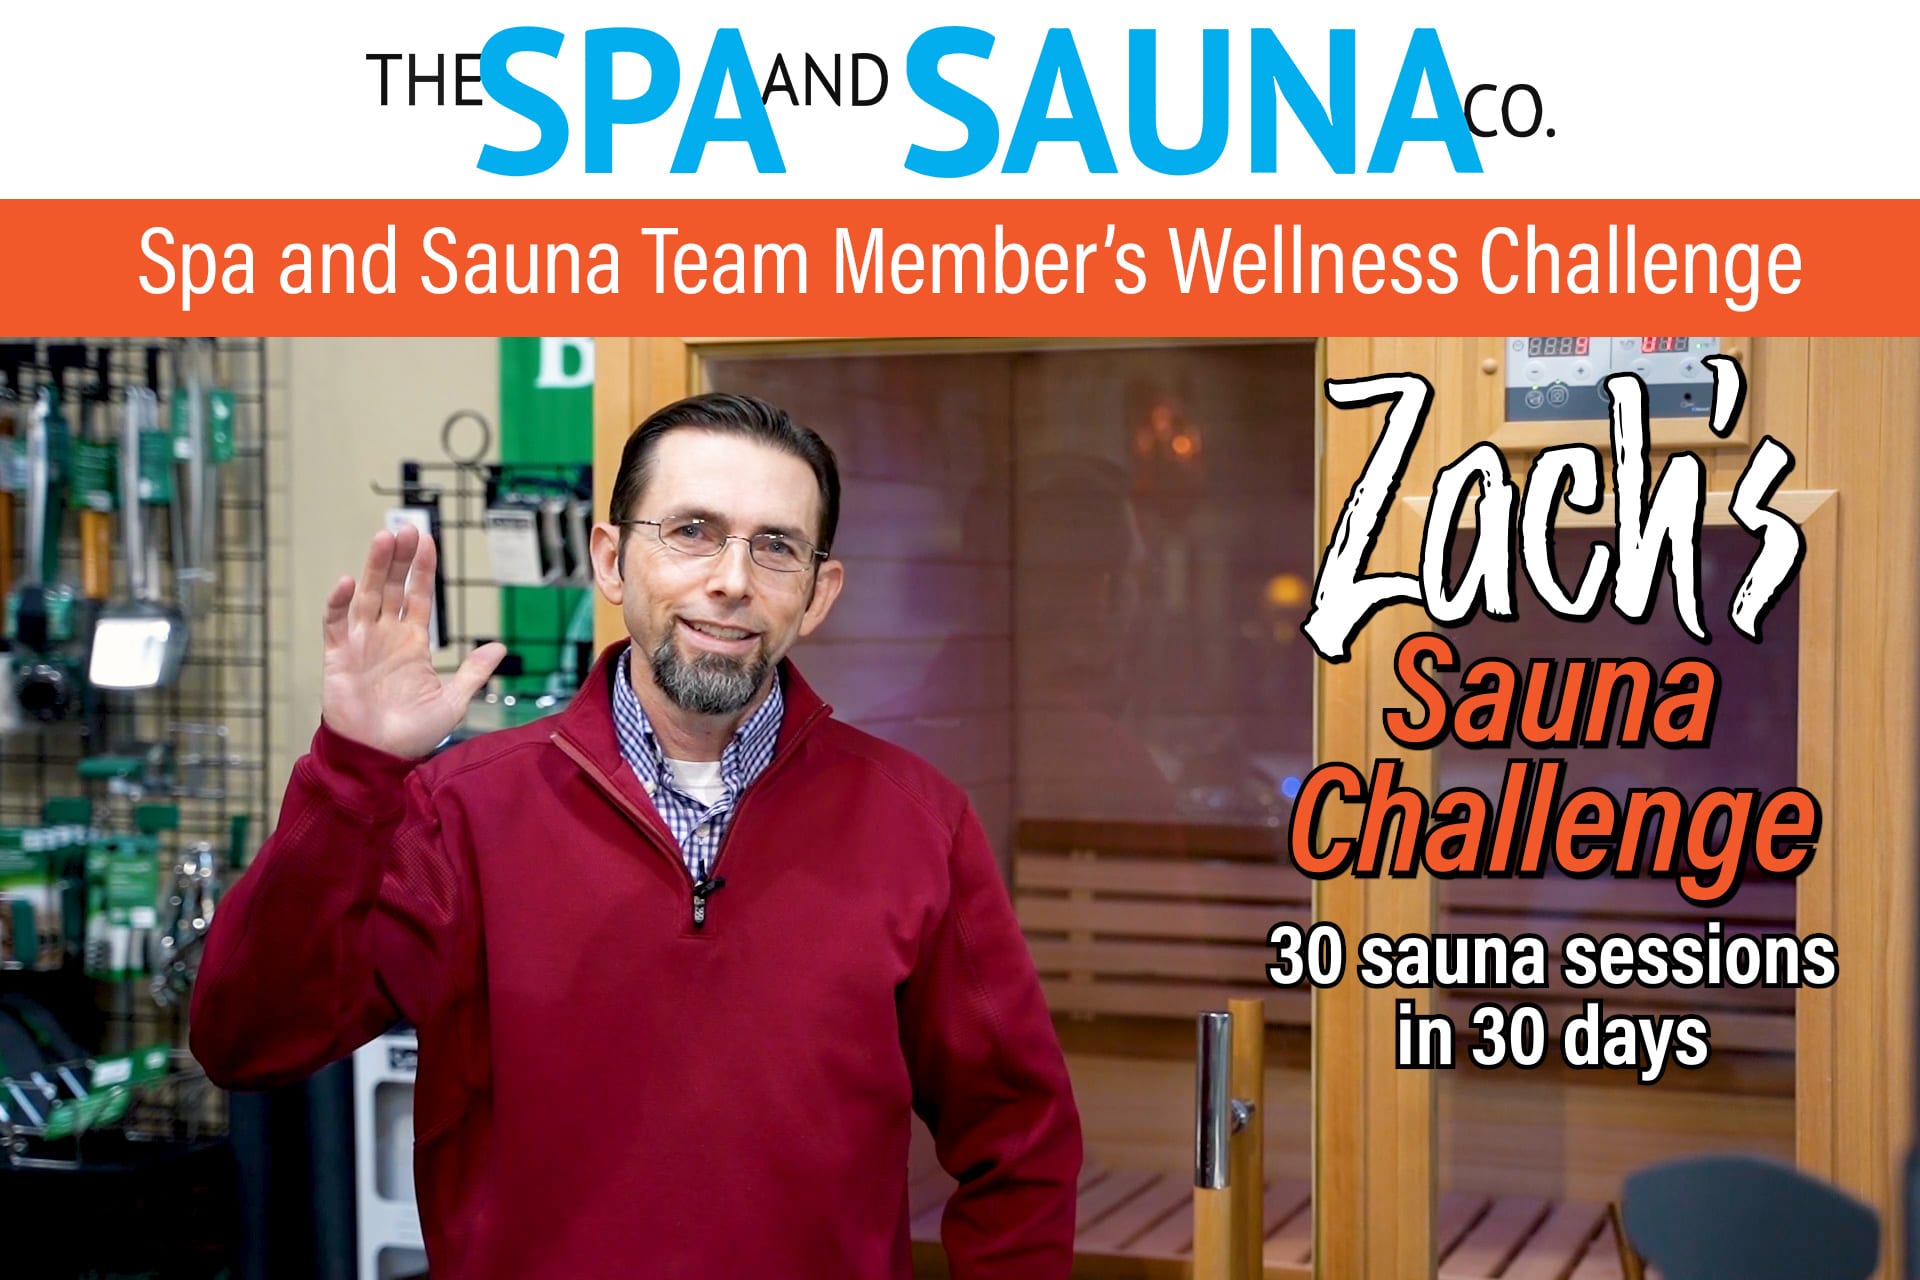 Spa and Sauna Team Member’s Wellness Challenge